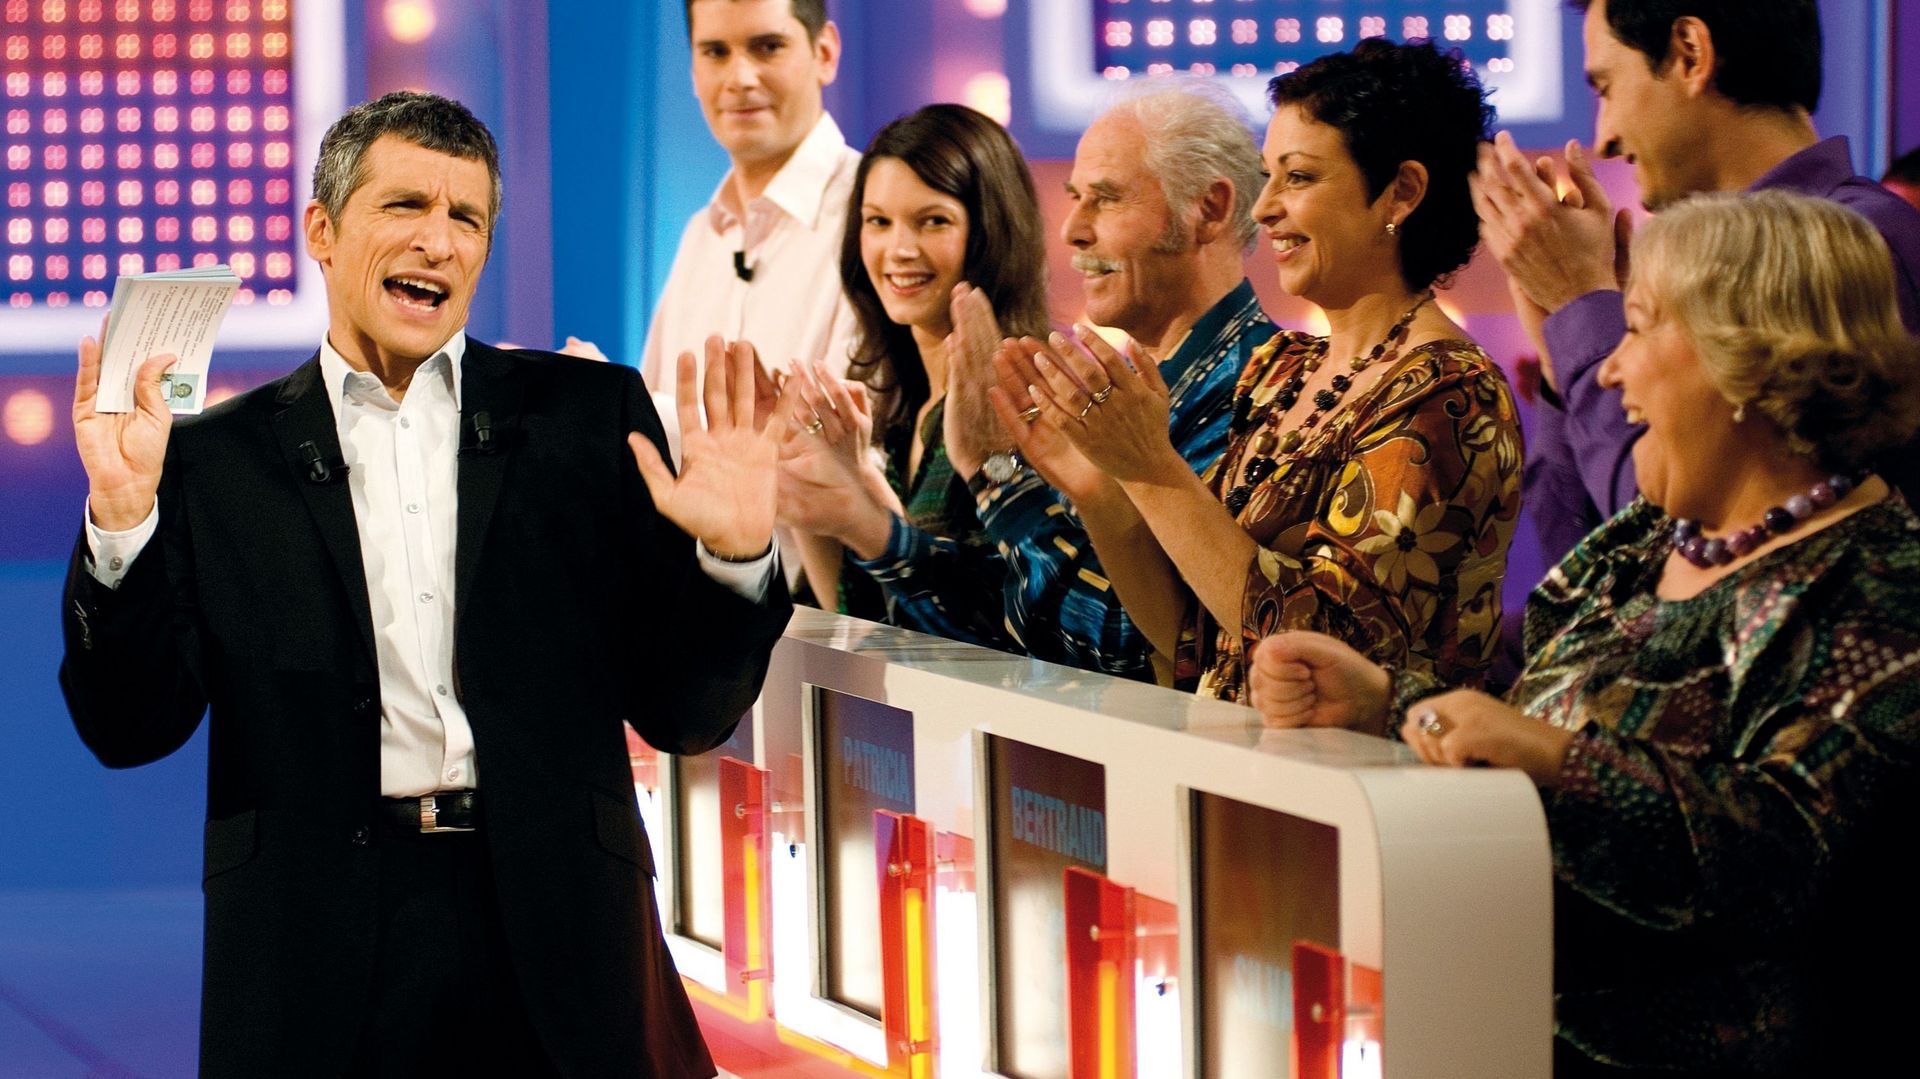 France 2 consacre son temps de midi à l’émission présentée par Nagui depuis juillet 2006.